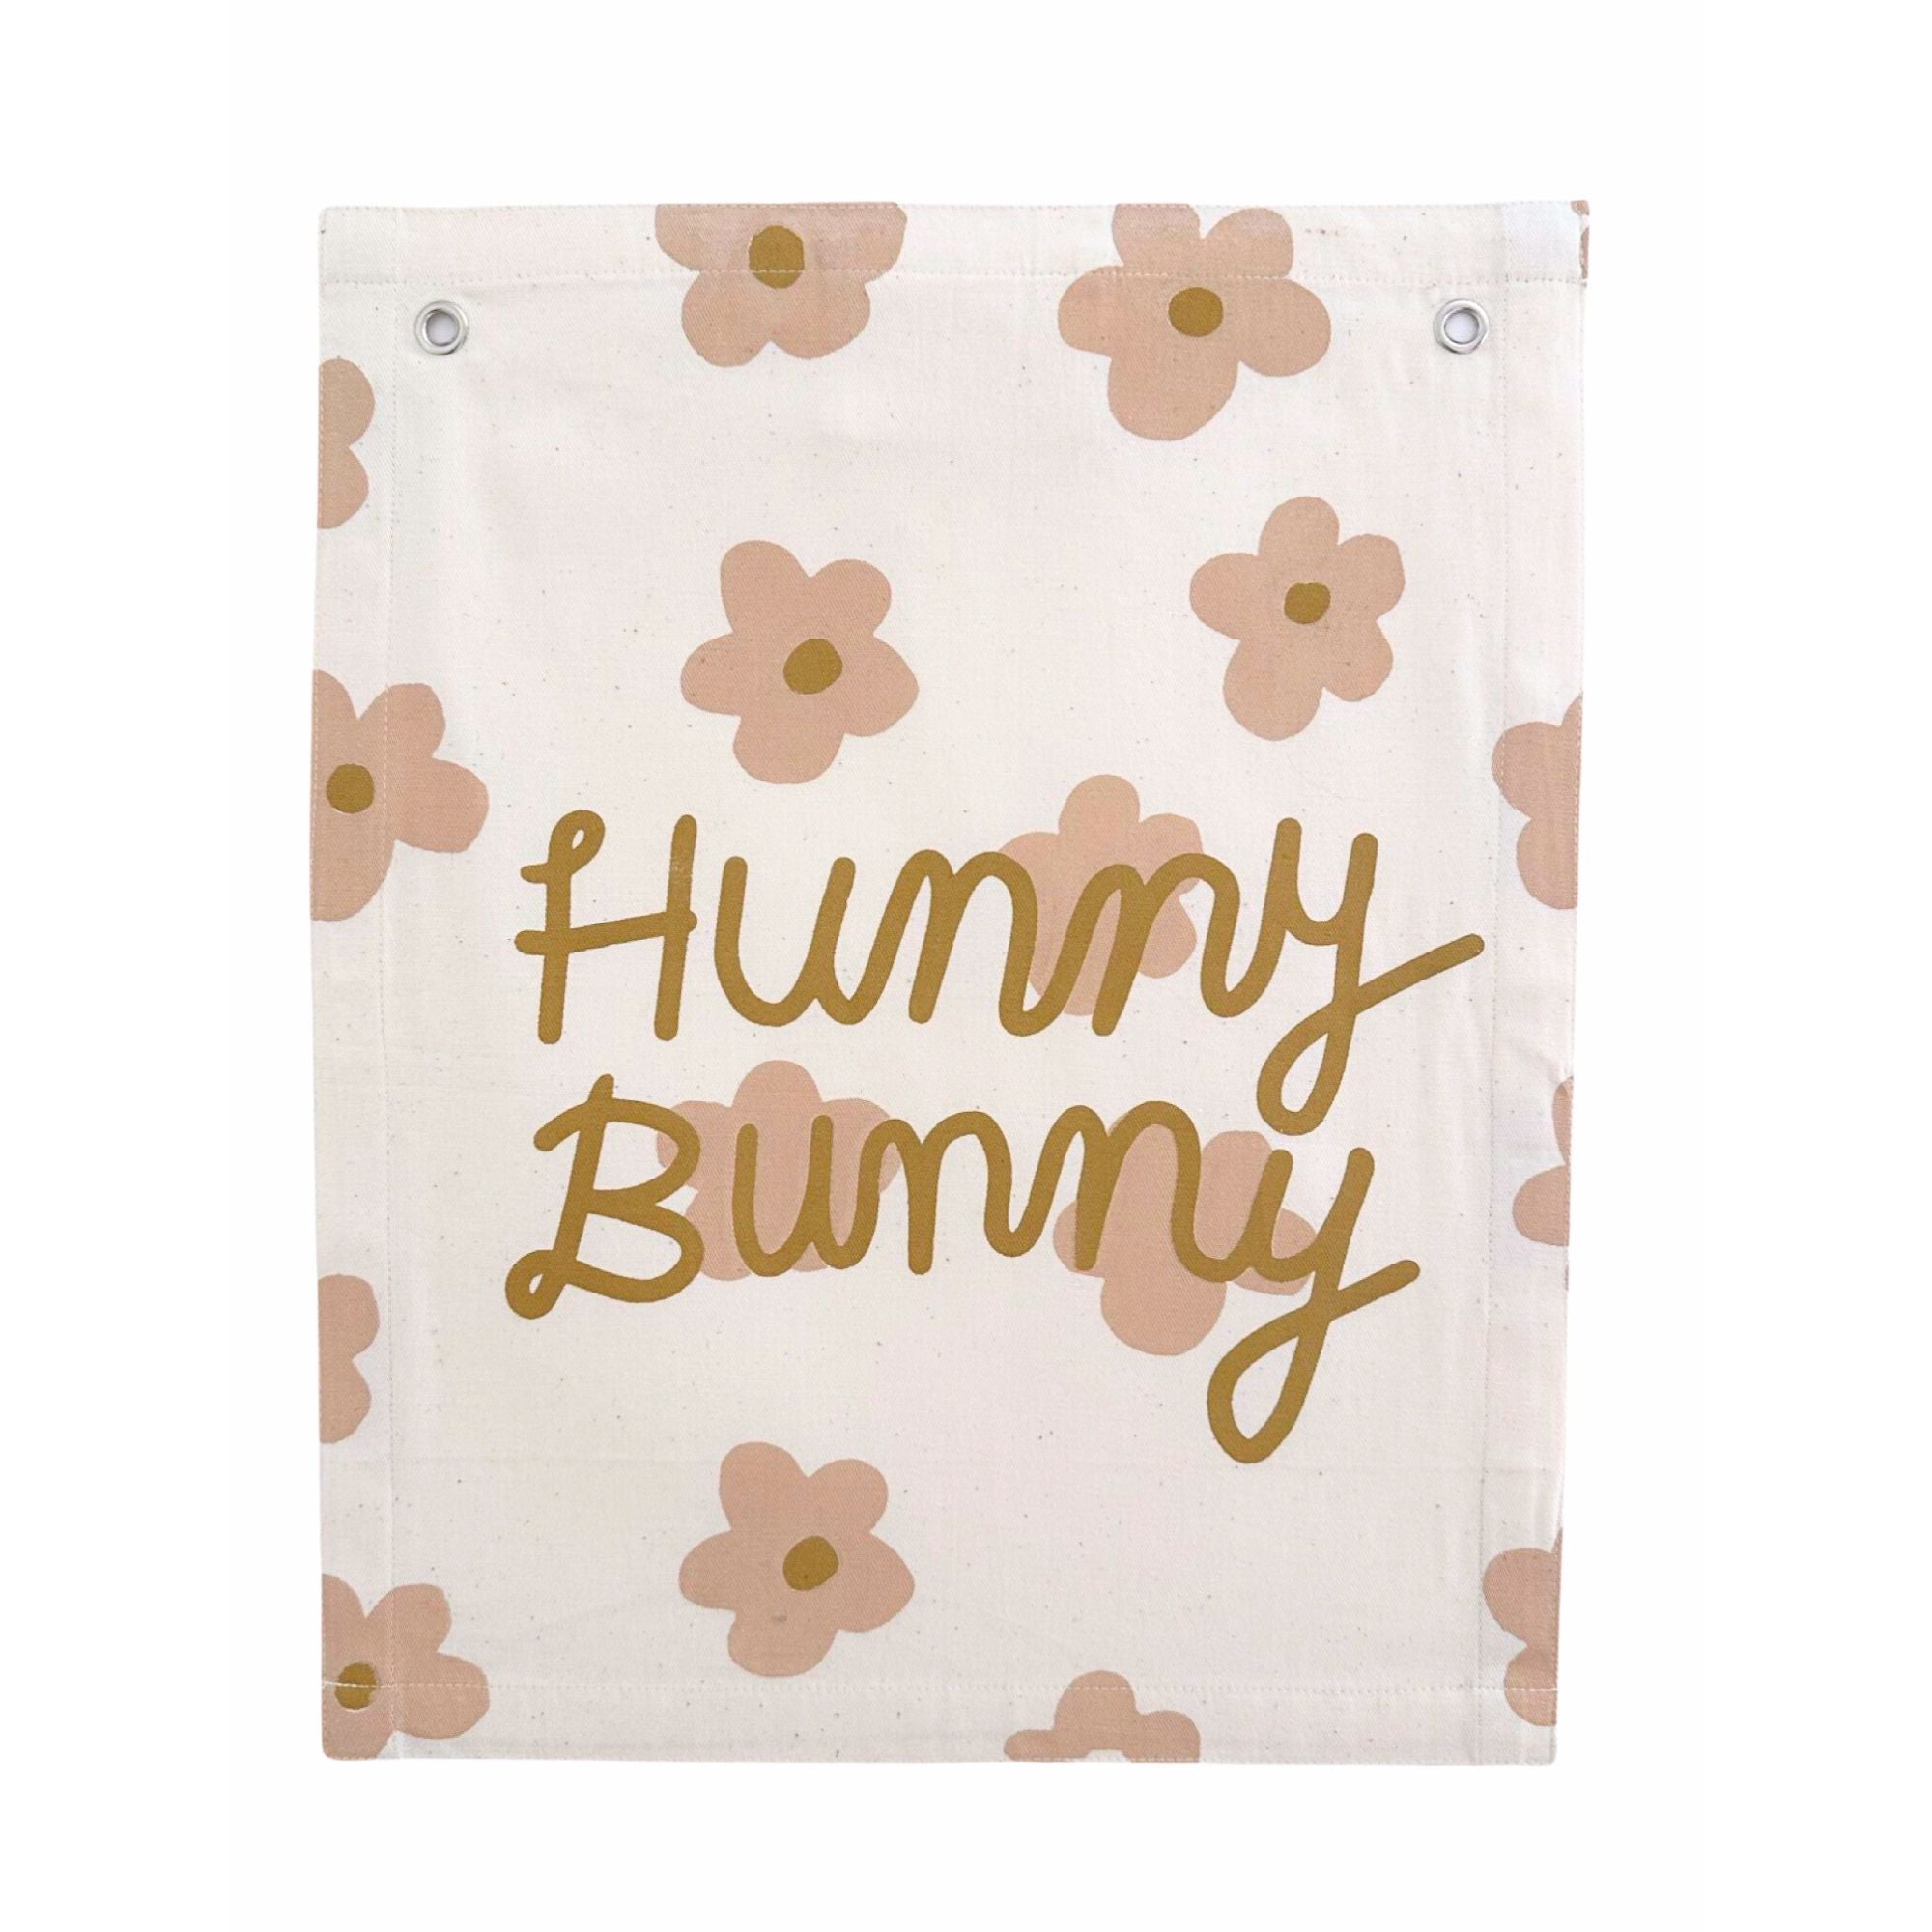 hunny bunny banner